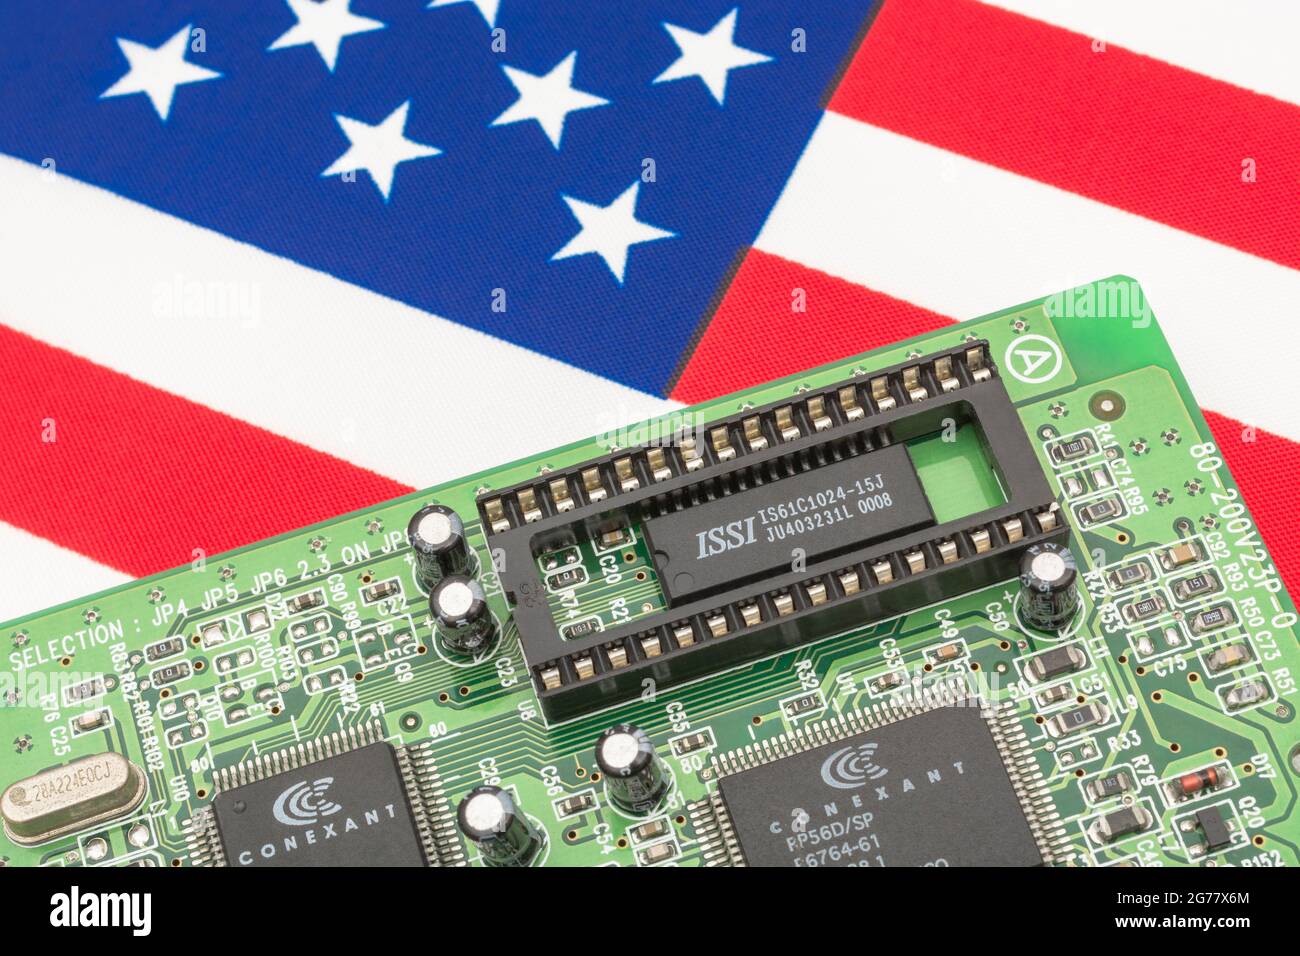 US Stars and Stripes-Flagge mit grüner Leiterplatte mit leerer EPROM-Buchse. Für 2021 Engpässe bei integrierten Computerchips, Halbleiterengpässe. Stockfoto